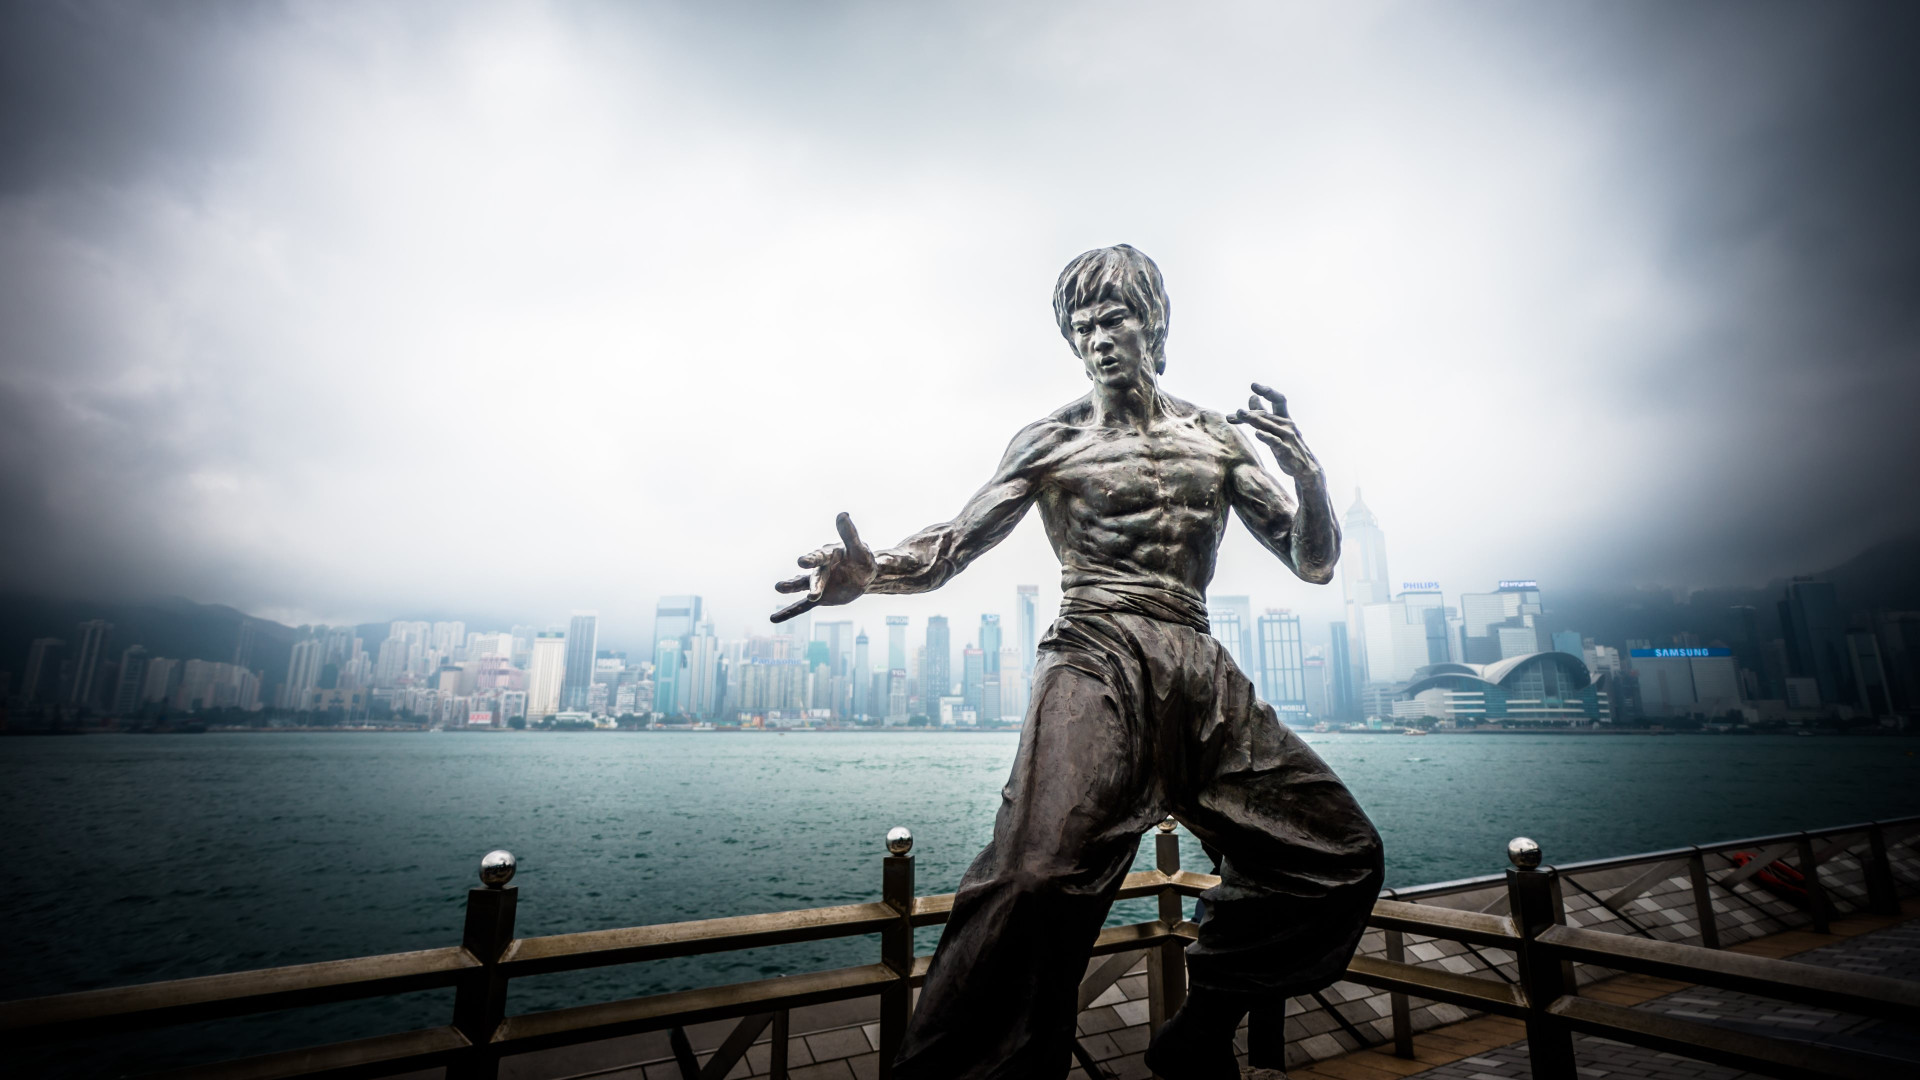 Bruce Lee statue from Hong Kong wallpaper 1920x1080